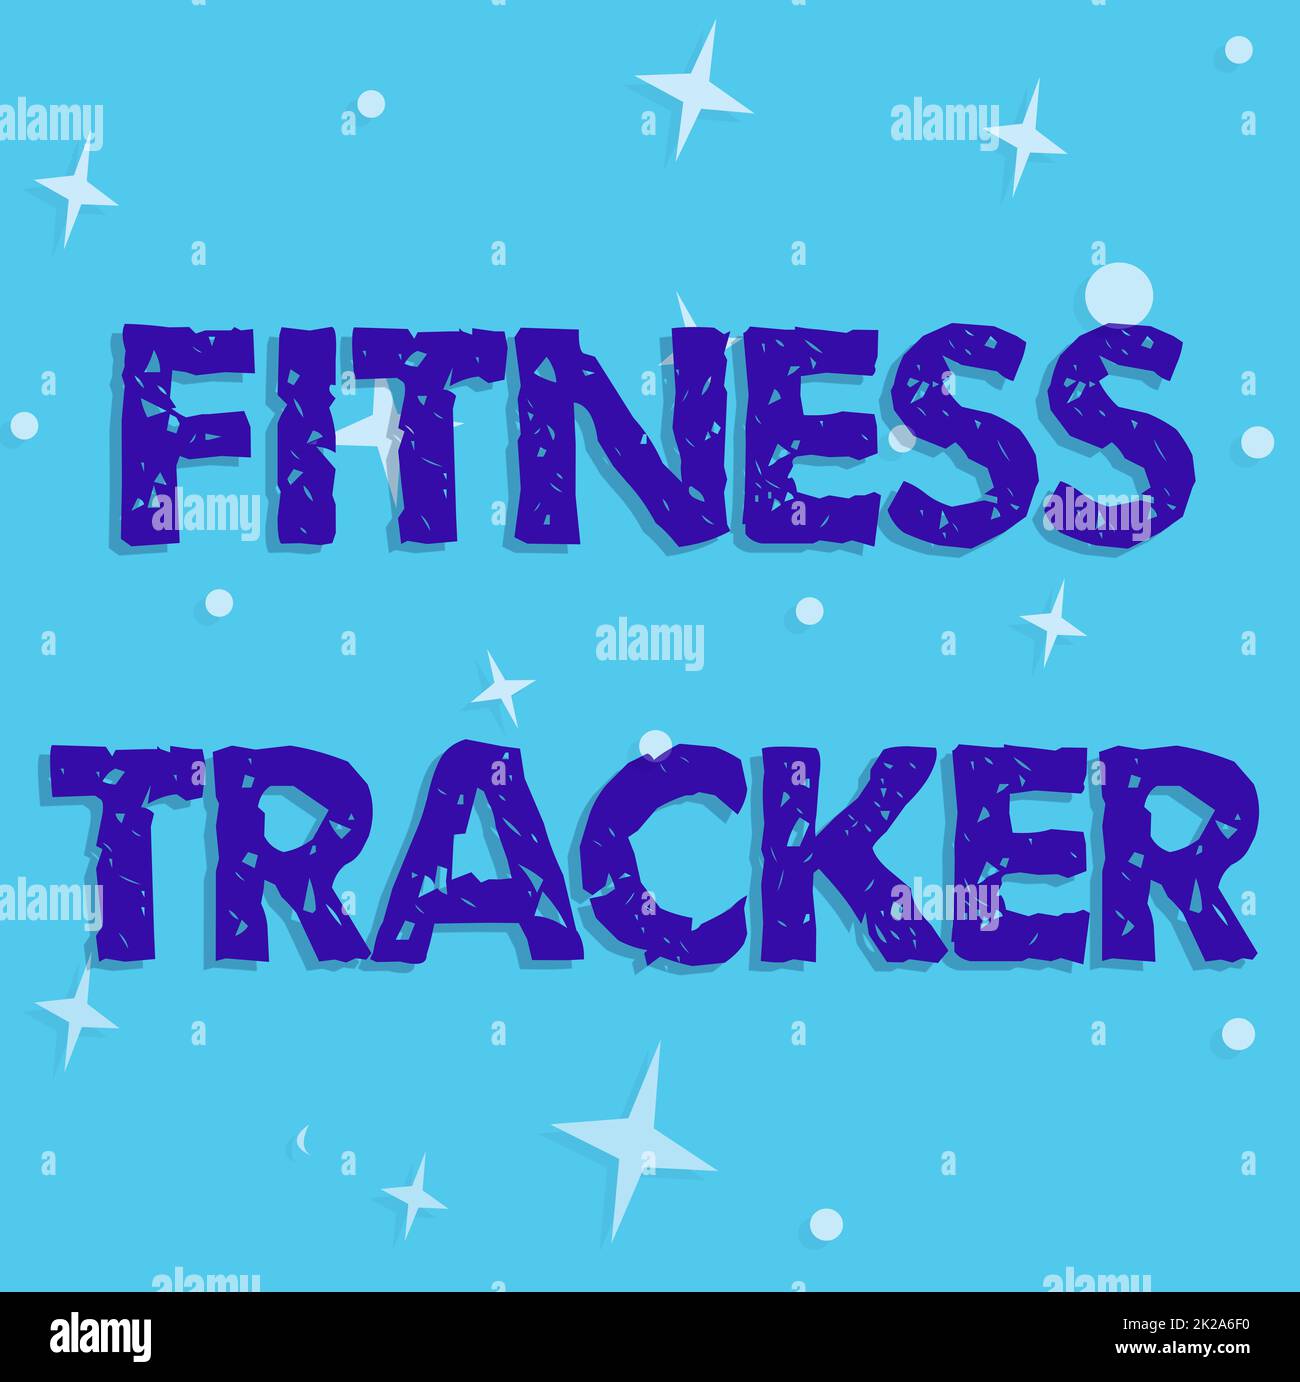 Text mit Inspiration Fitness Tracker. Wort für ein Überwachungsgerät, das alle gesundheitsbezogenen Aktivitäten aufzeichnet Linie illustrierte Hintergründe mit verschiedenen Formen und Farben. Stockfoto